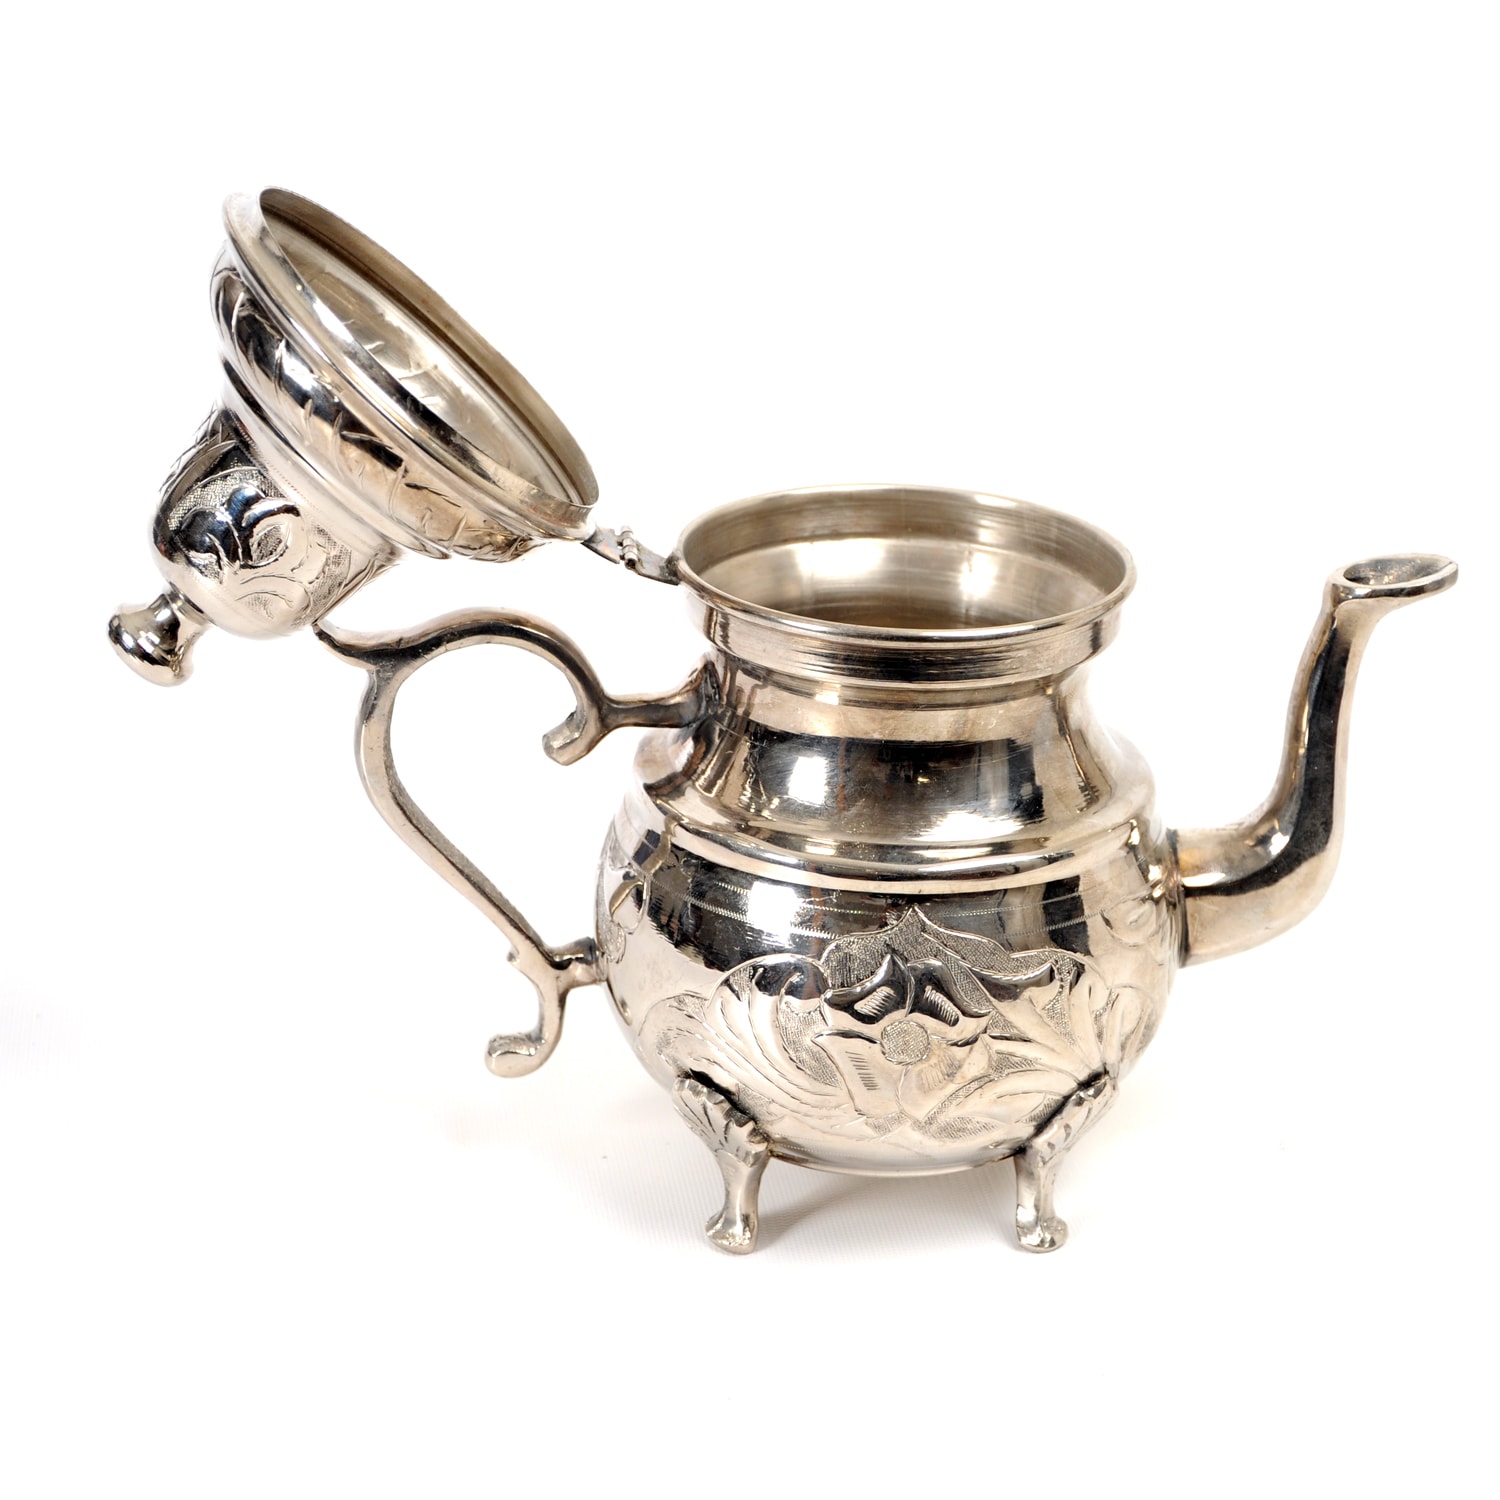 Vintage White Metal Teapot 1968 Tea Kettle Kitchen Enamel Coffee